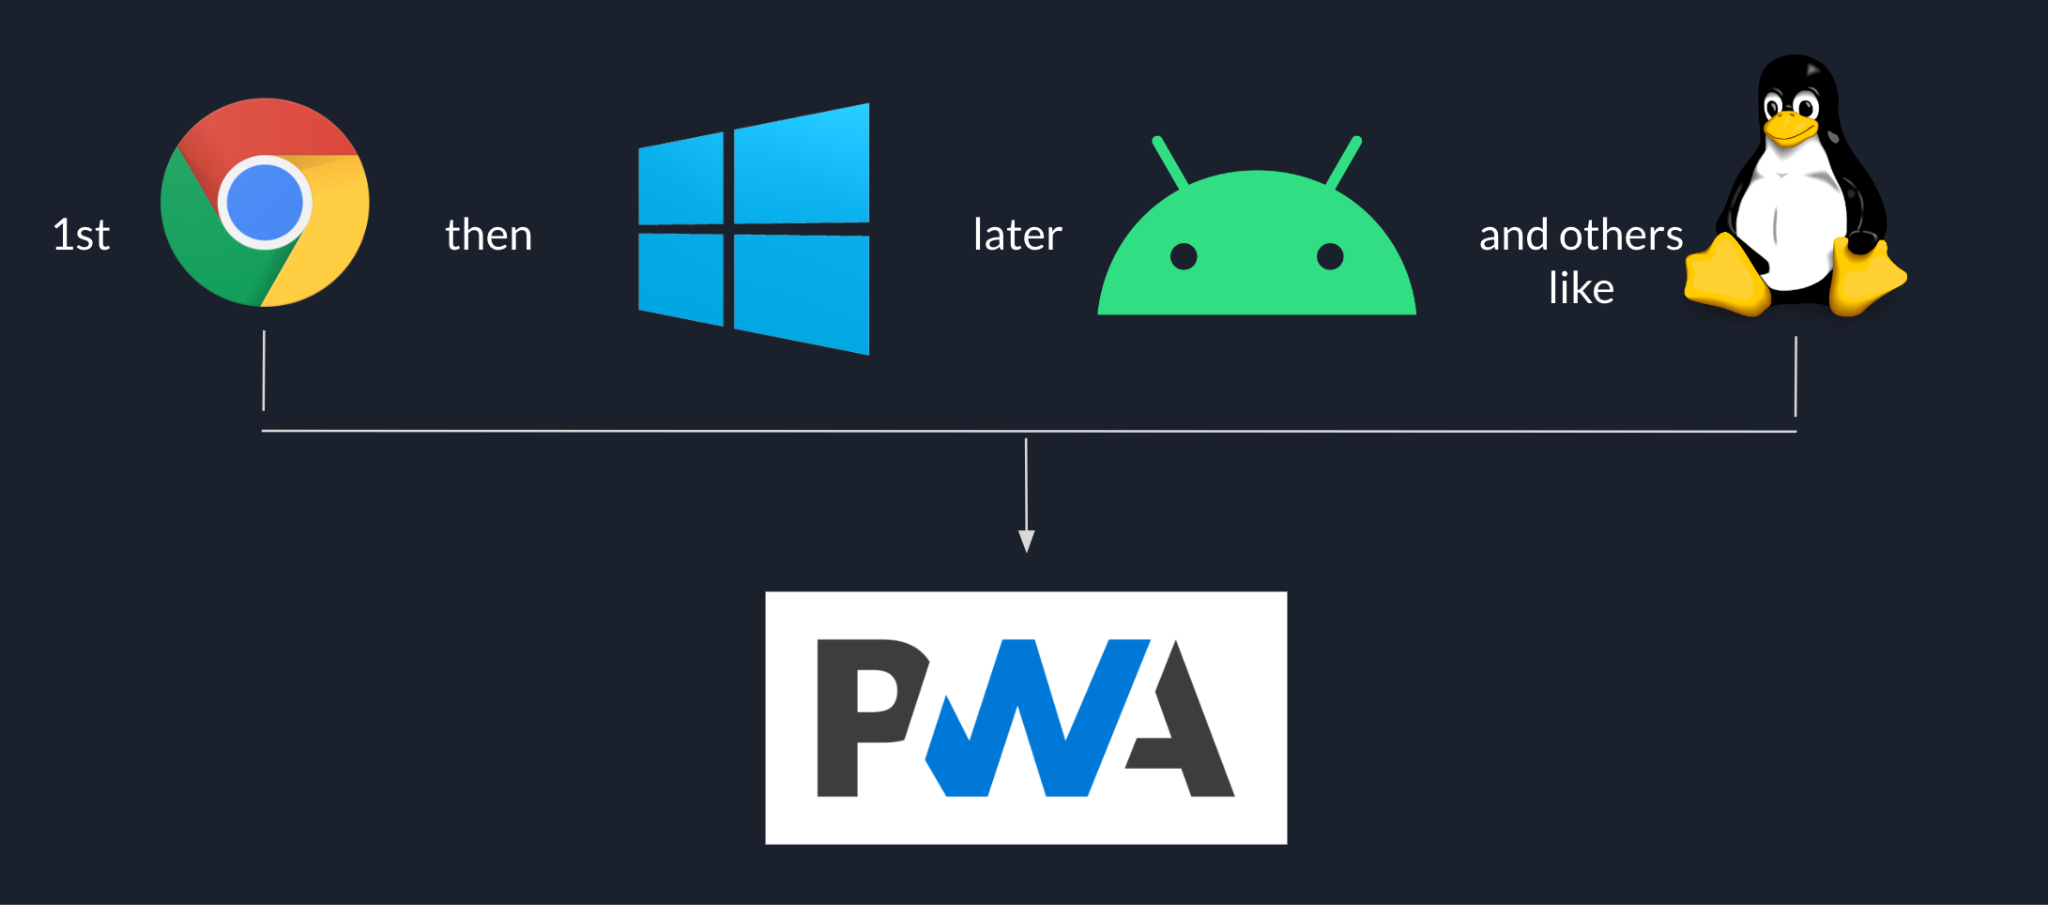 Urutan peluncuran Goodnotes yang dimulai dengan Chrome, lalu Windows, diikuti oleh Android, dan platform lain seperti Linux di akhir, semuanya berdasarkan PWA.